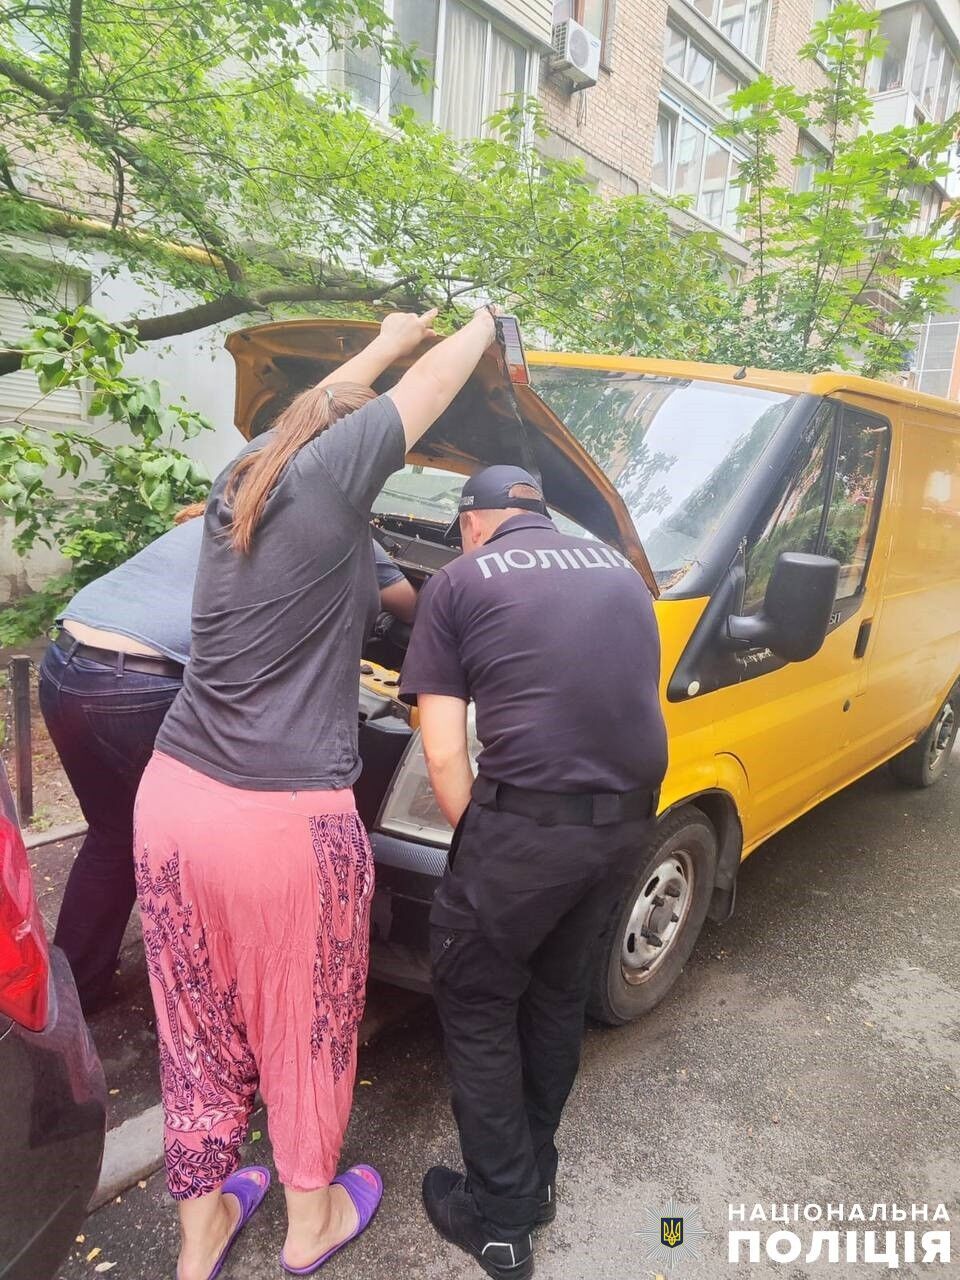 Кожне життя важливе: у Києві поліцейські врятували кішку, яка застрягла у моторному відсіку авто. Фото